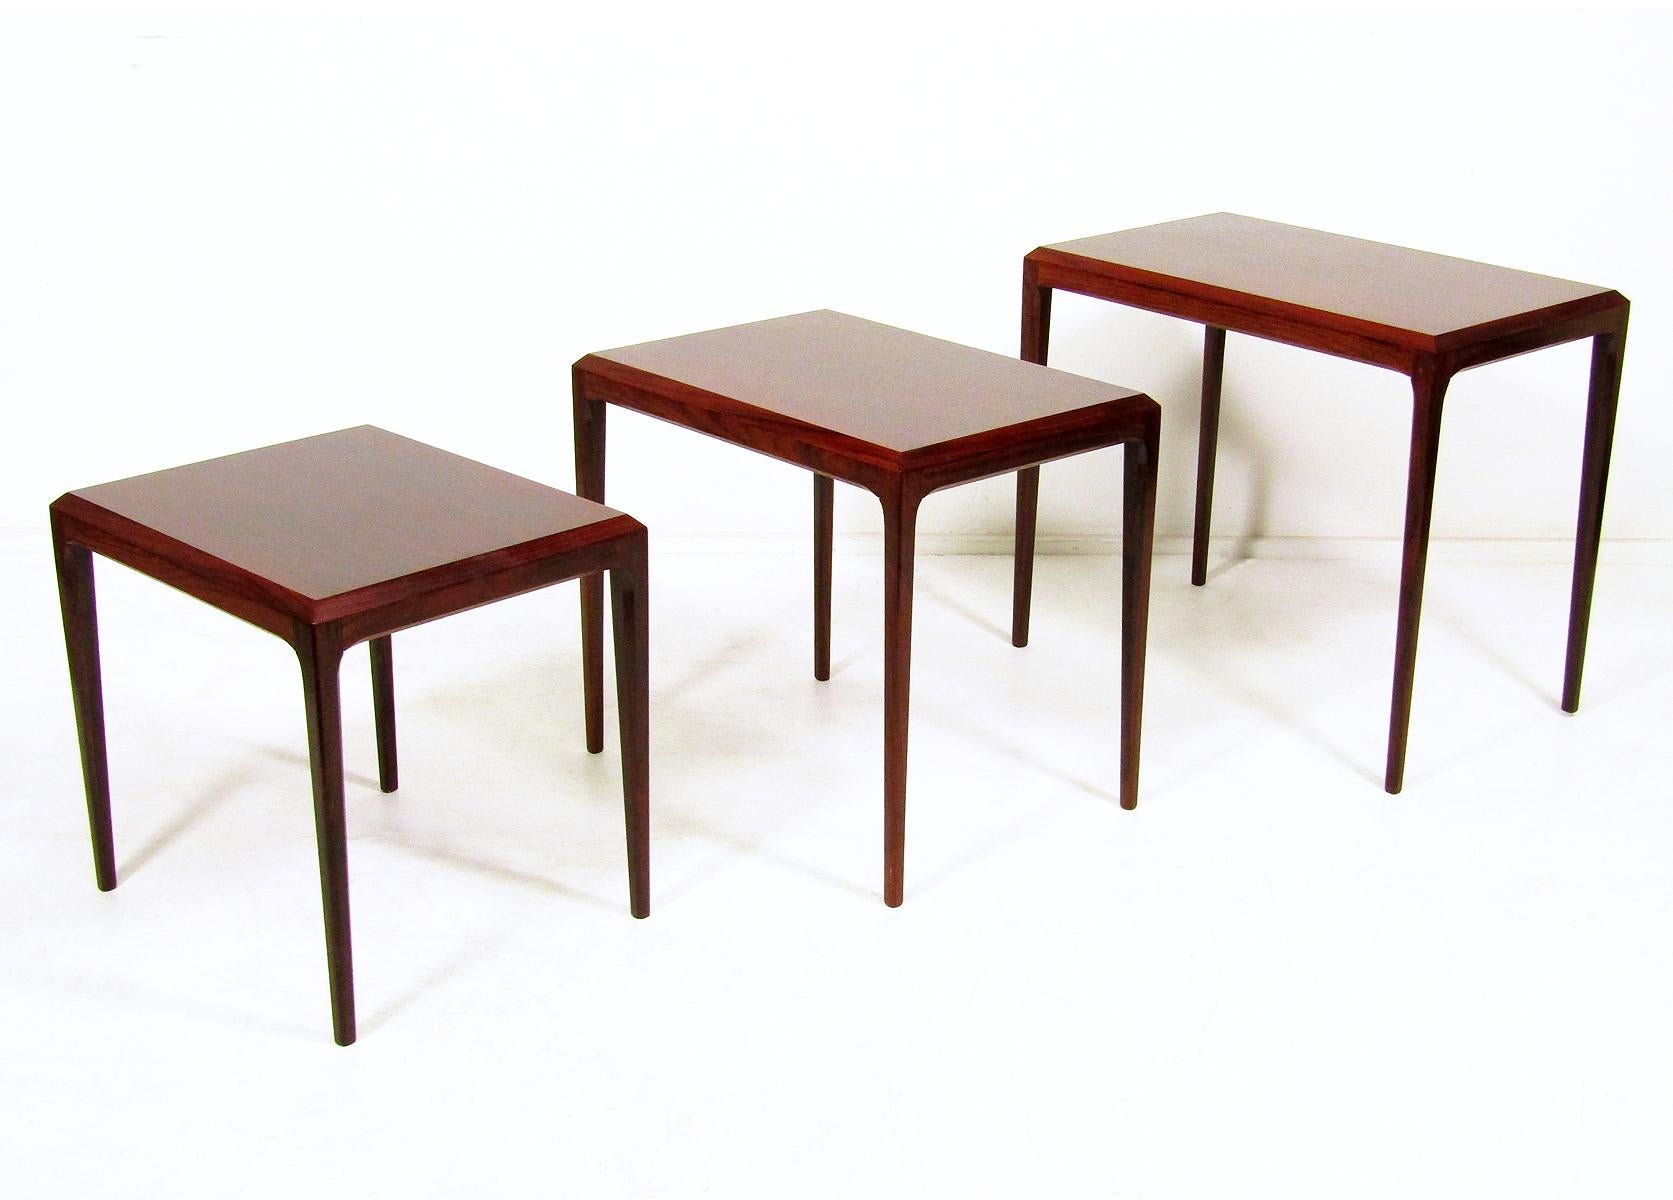 Ein Satz von drei Nisttischen aus Palisanderholz aus den frühen 1960er Jahren von dem dänischen Designer Johannes Andersen für CFC Silkeborg.

Mit feinen Proportionen, konisch zulaufenden Beinen und skulpturalen Konturen zeigen diese Tische die